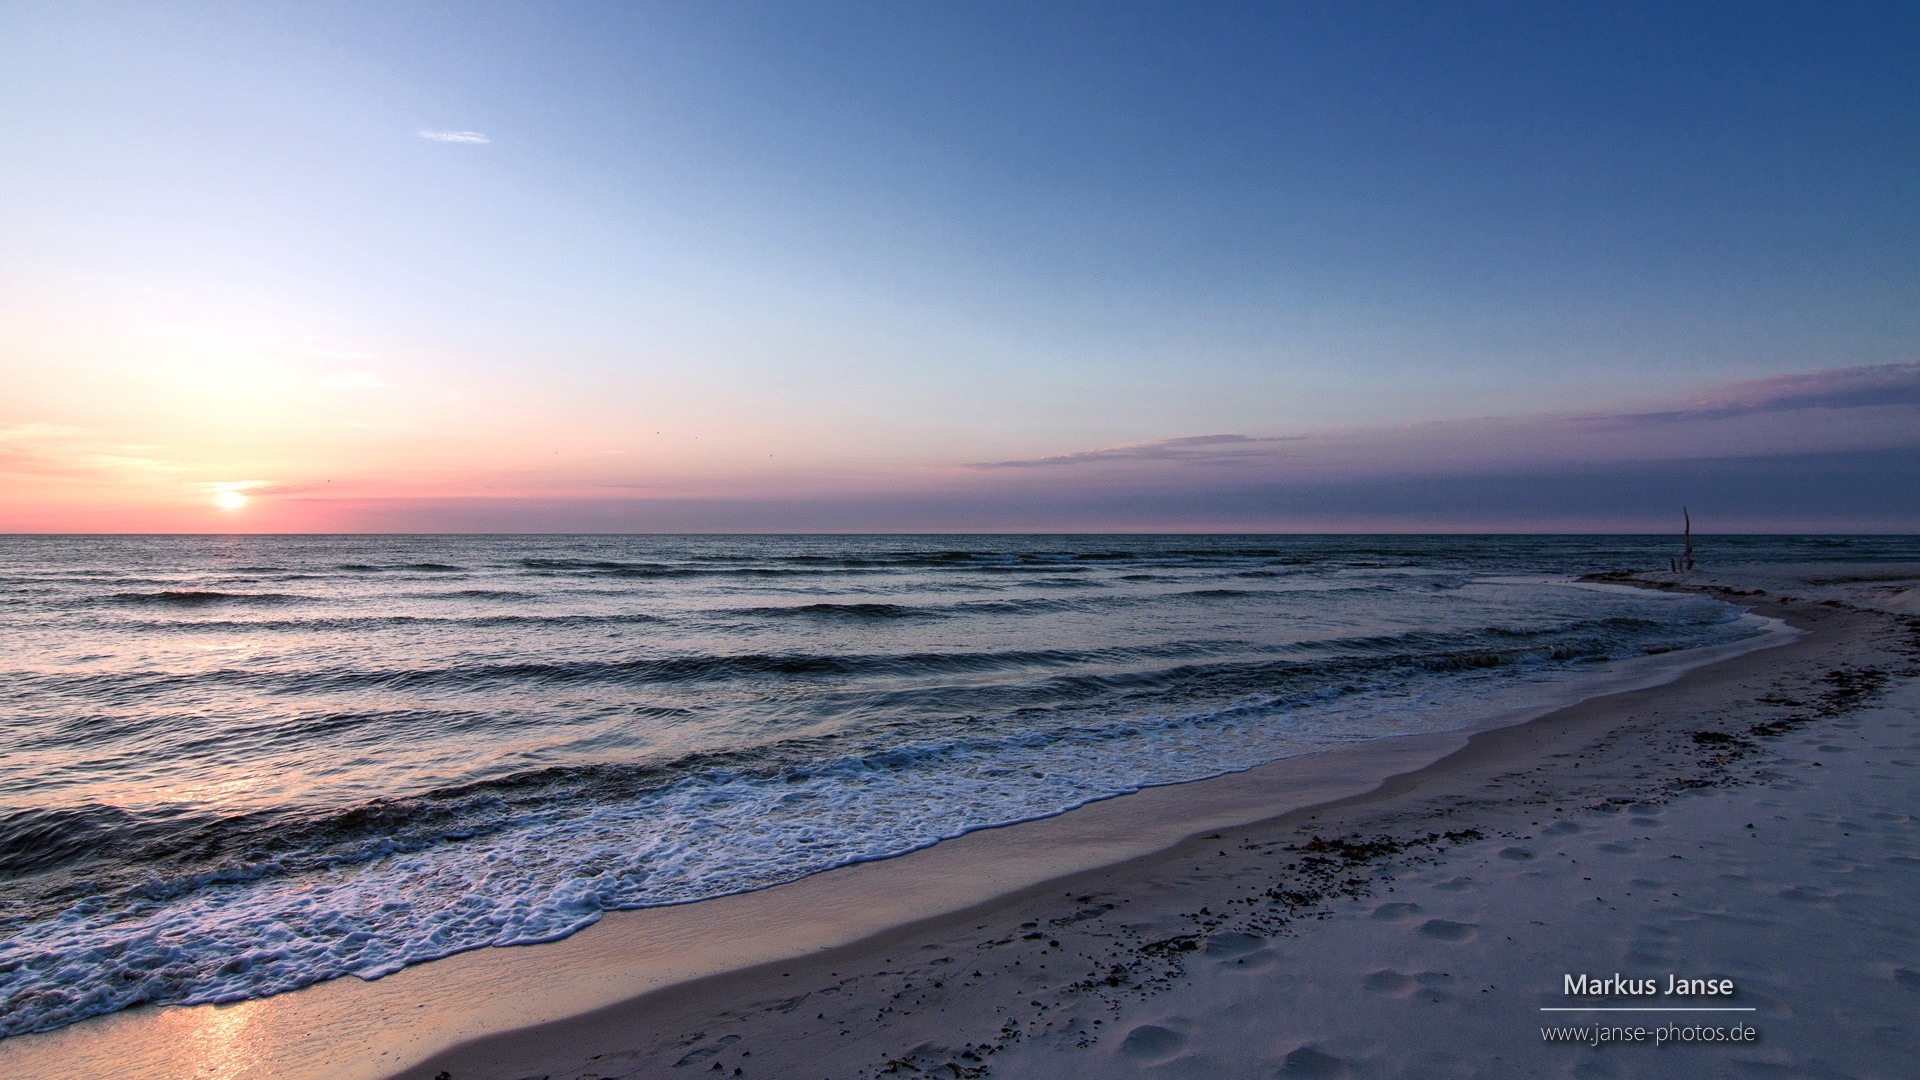 독일의 아름다운 해안 풍경, 윈도우 8의 HD 배경 화면 #14 - 1920x1080